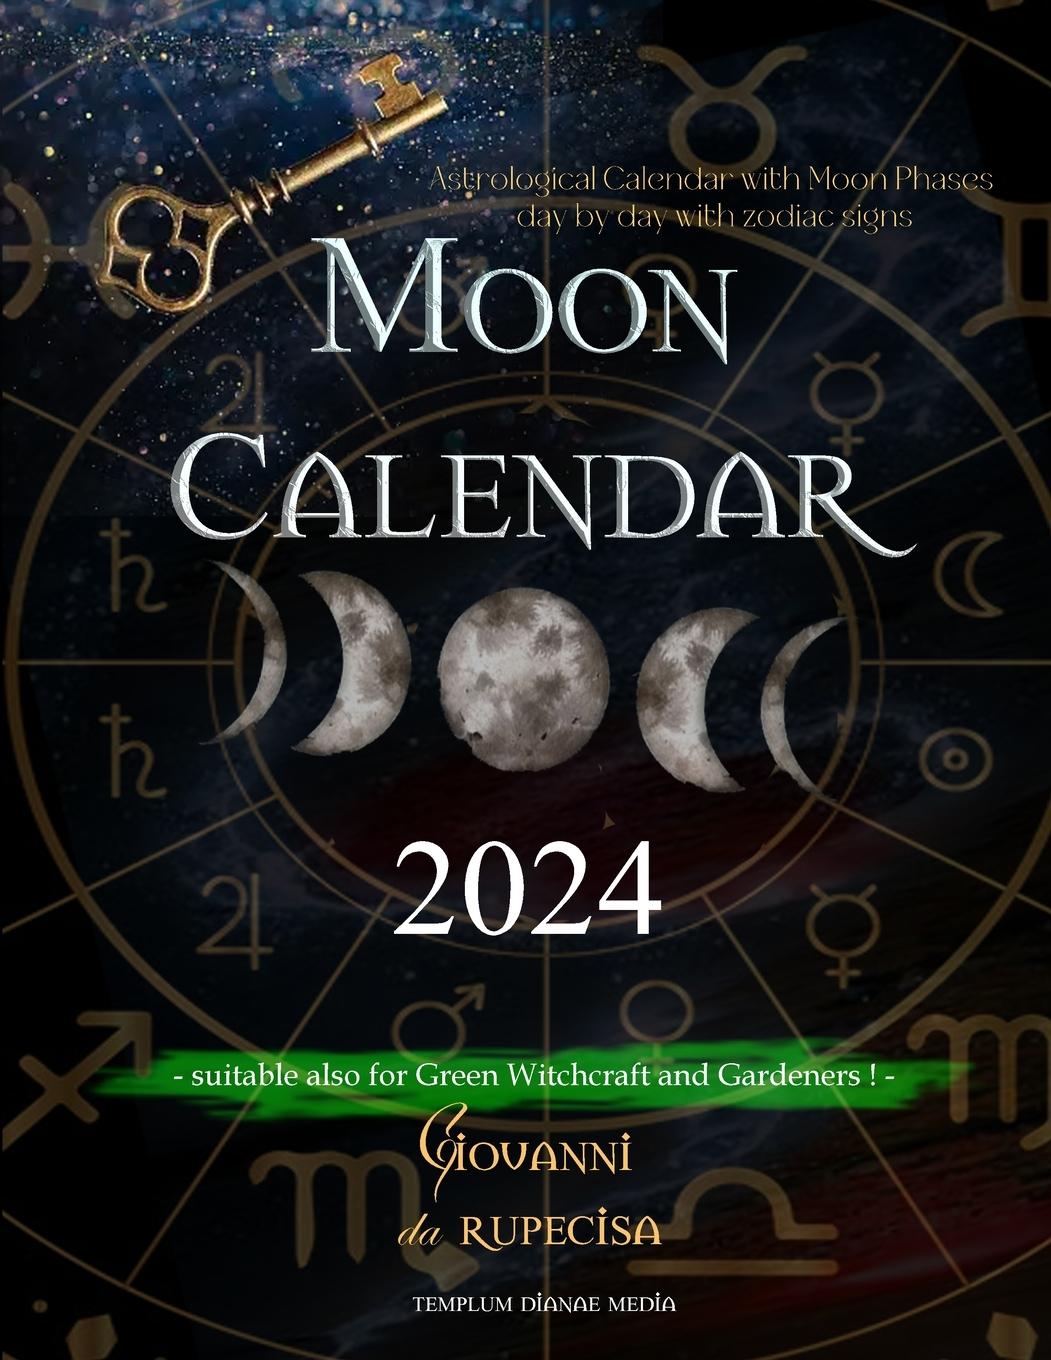 Book Moon Calendar 2024 